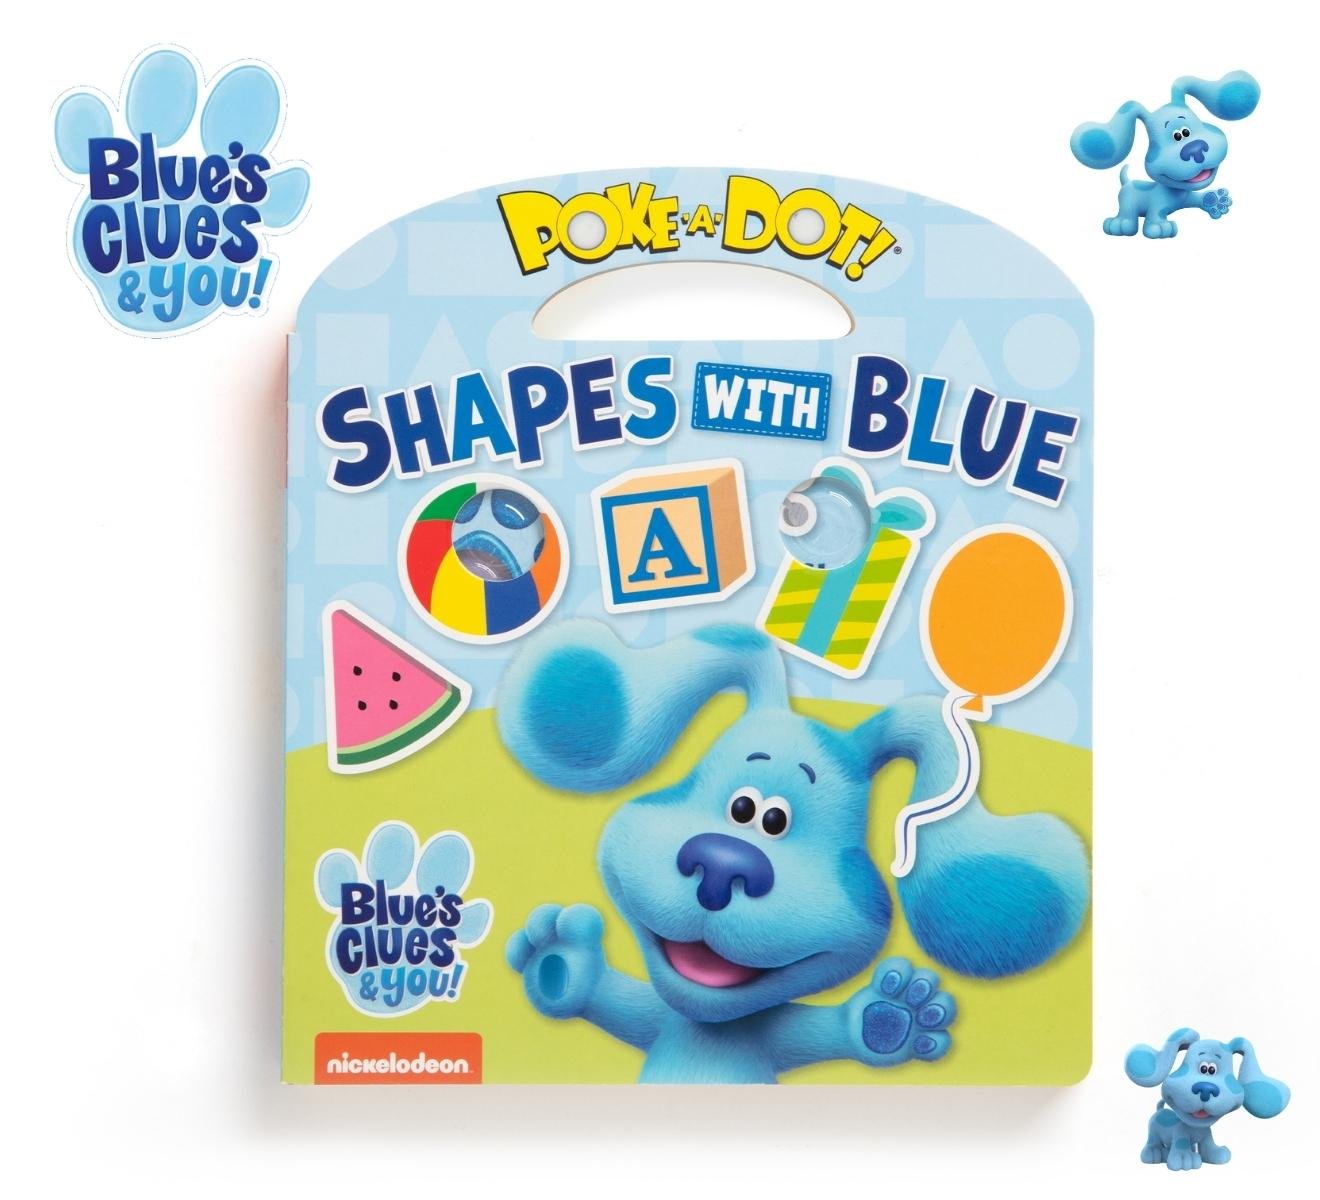 [มีปุ่มกดดึงดูด Blues] รุ่น 33006 หนังสือปุ่มกด รุ่น Shapes  Blue's Clues & You! Poke-A-Dot: Shapes